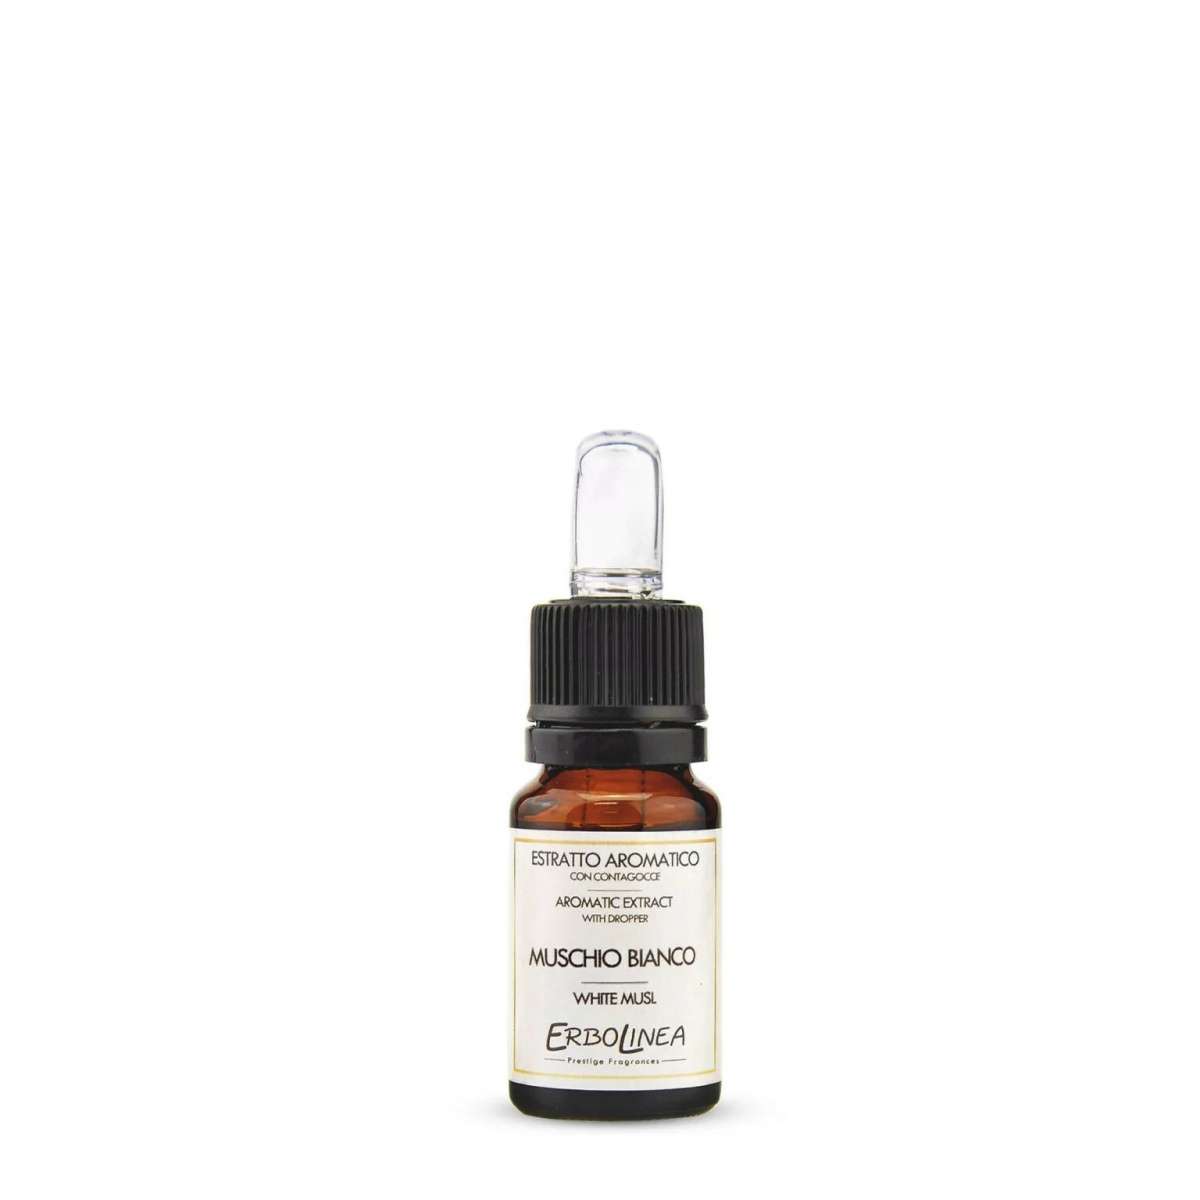 Immagine del prodotto Estratto Aromatico con Contagocce Muschio Bianco 10 ml | Erbolinea Prestige